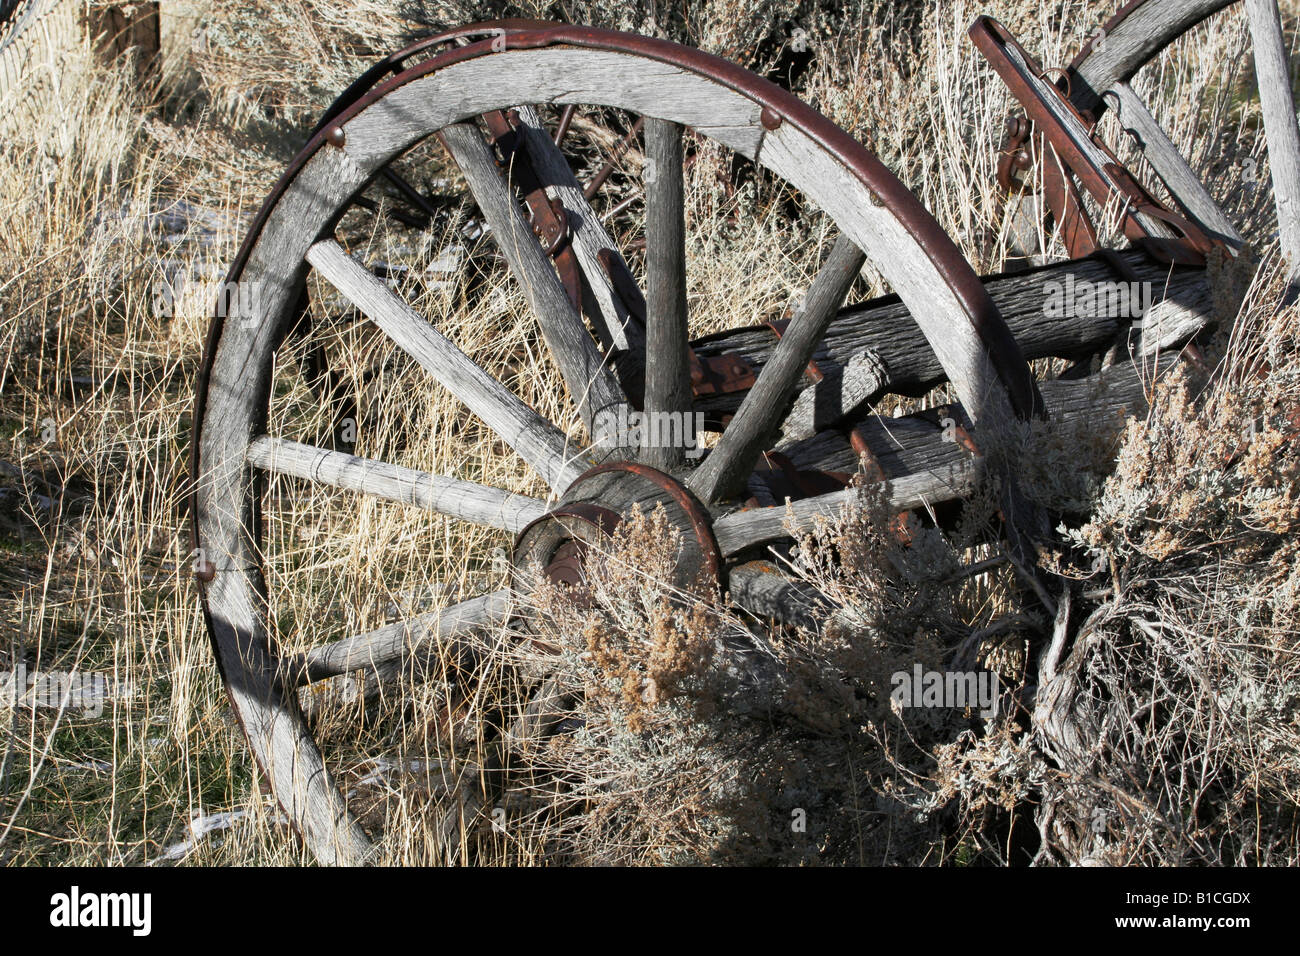 Les vieilles roues de charrette dans sage brush Banque D'Images